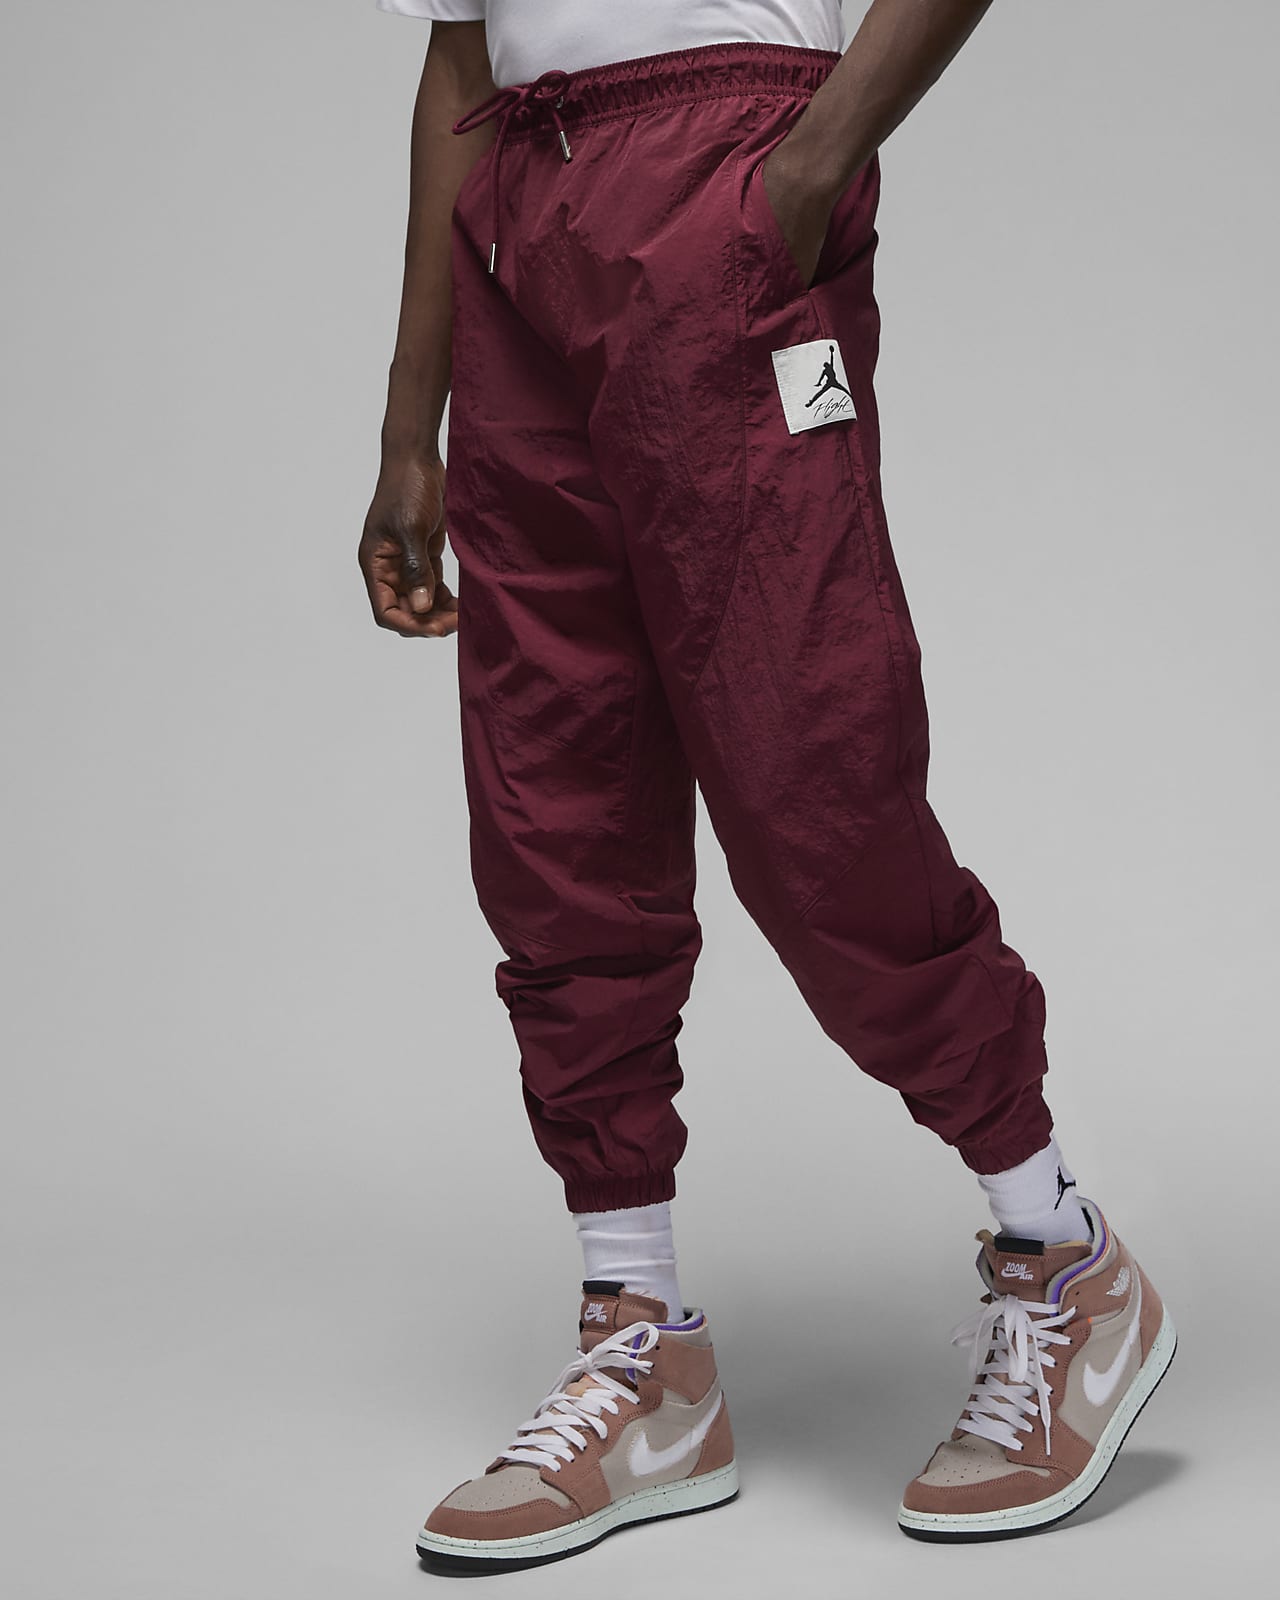 Peligro Gracia Descripción del negocio Jordan Essential Pantalón de calentamiento Statement - Hombre. Nike ES